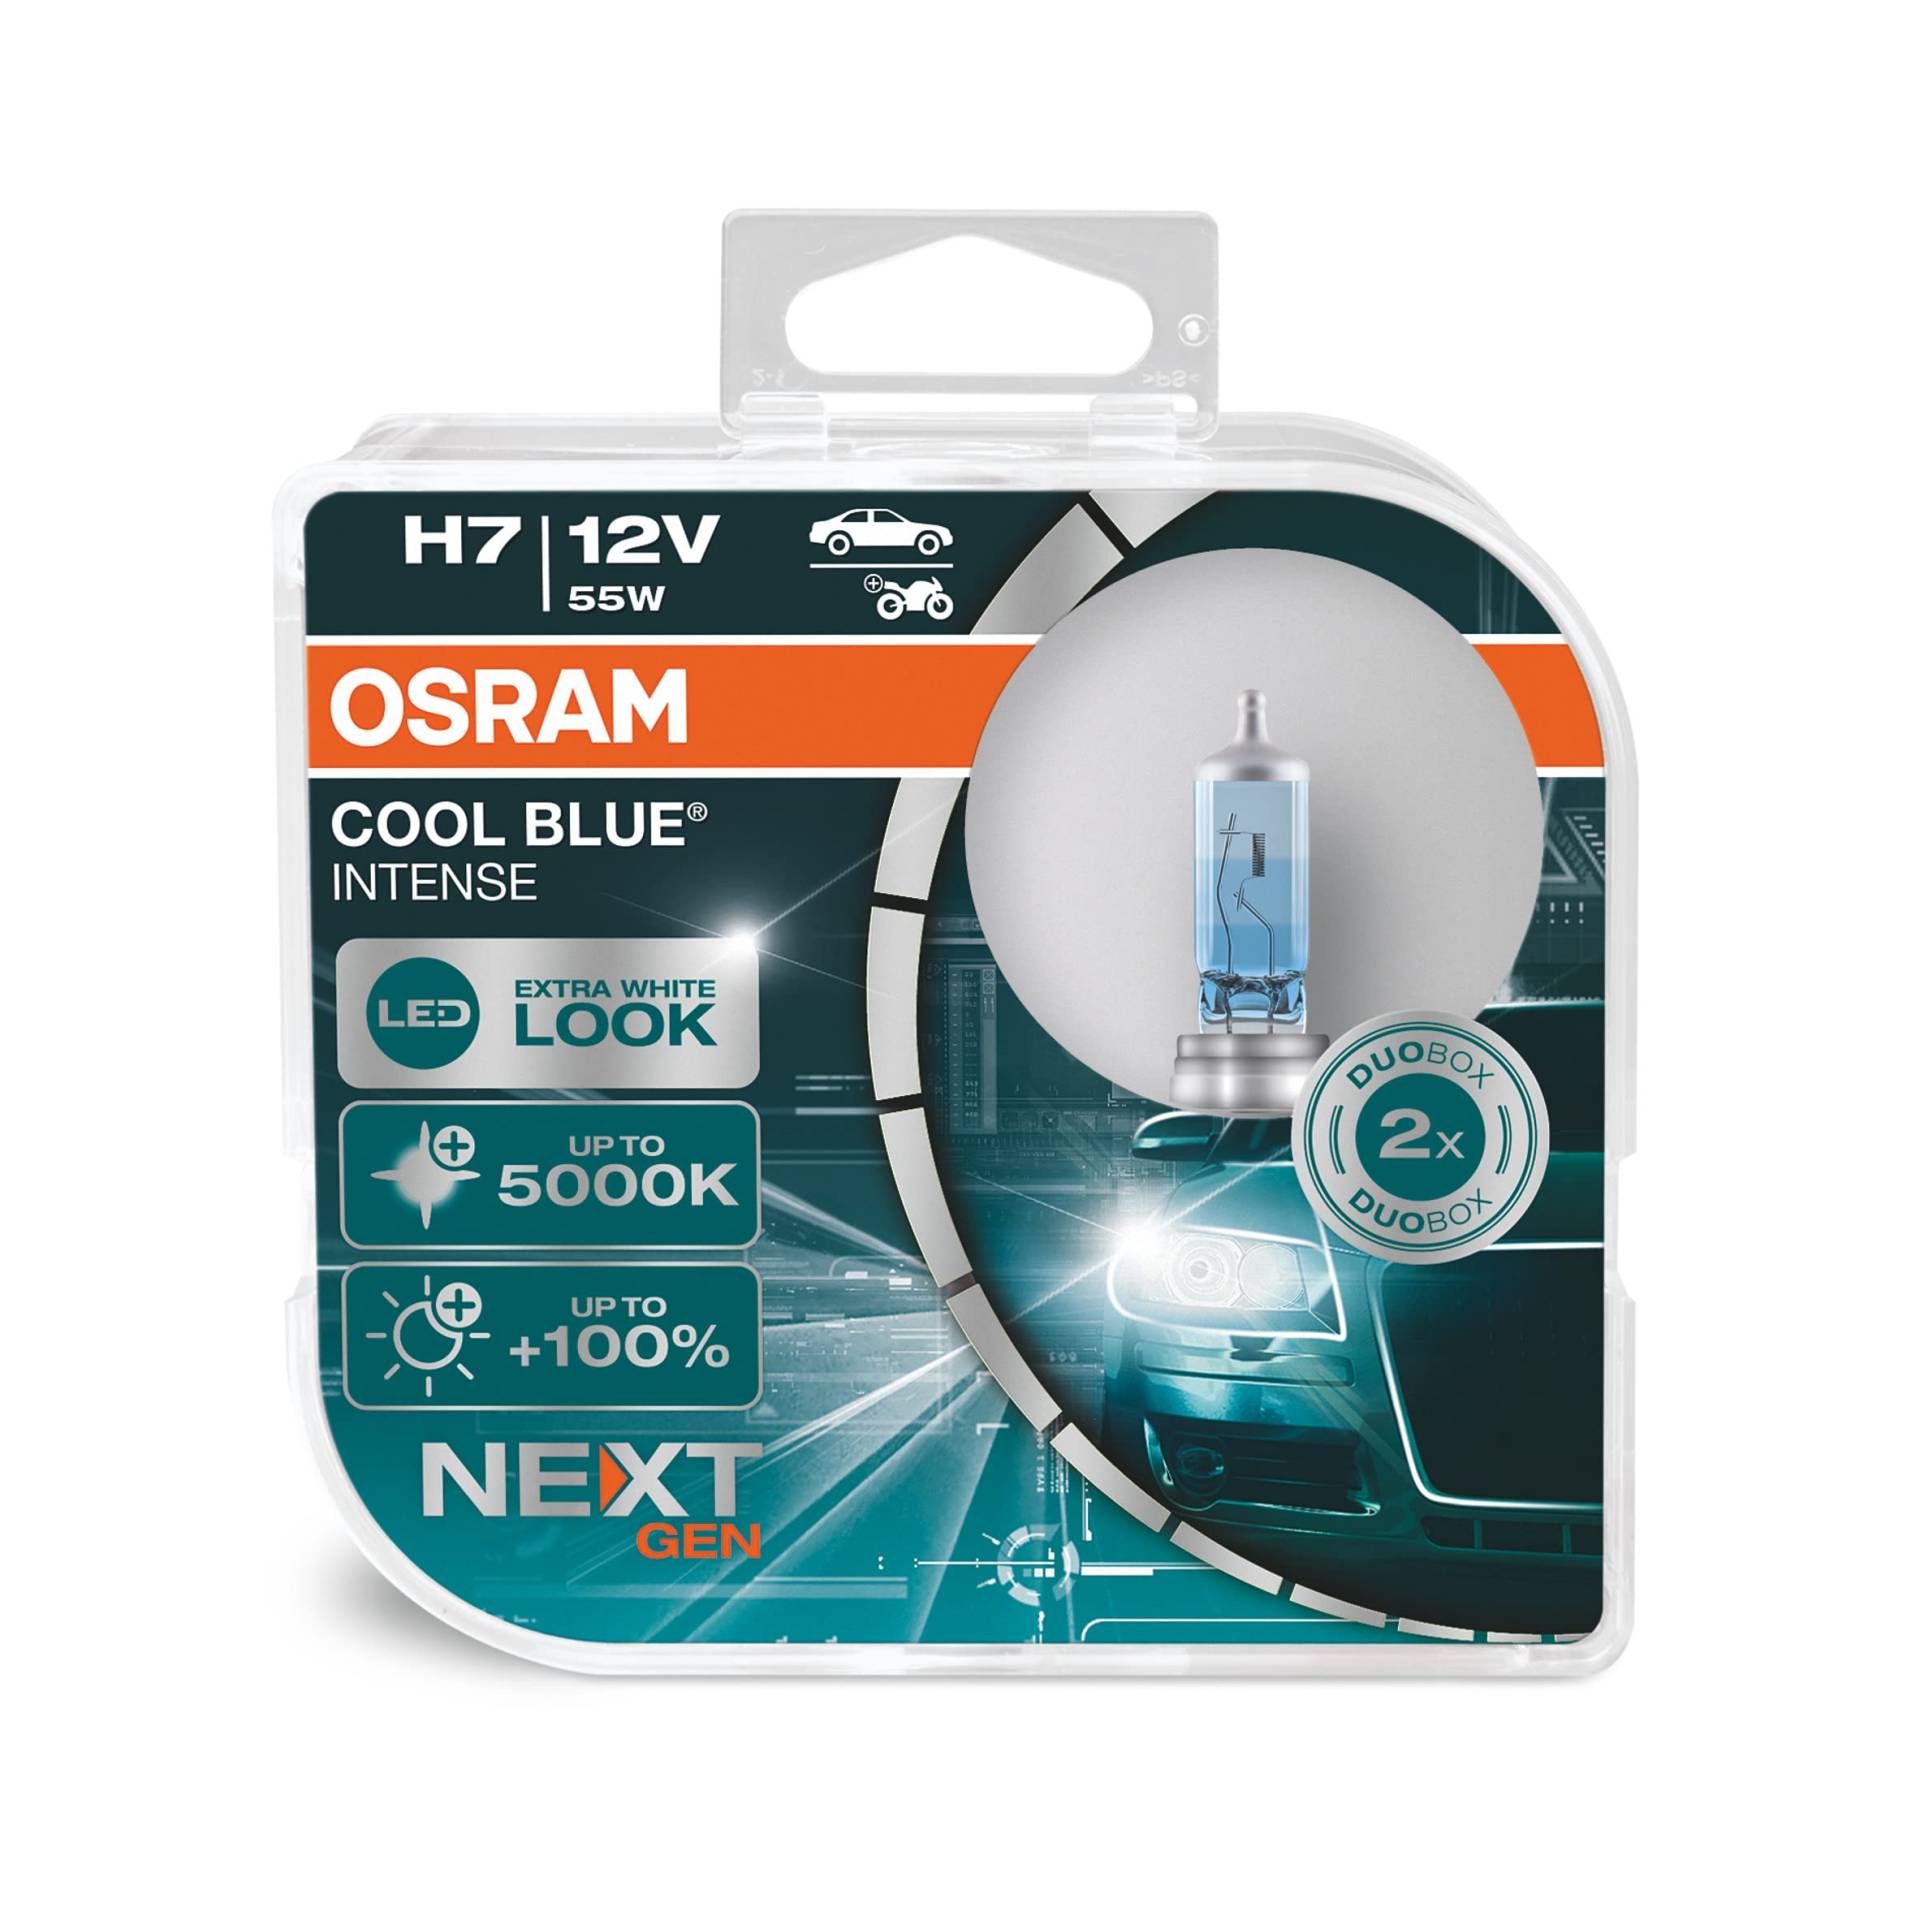 Osram Cool Blue Intense H7, mit 100 Prozent mehr Helligkeit, bis zu 5.000K, Halogen-Scheinwerferlampe, LED-Look, Duo Box (2 Lampen), Fahrzeugspezifische Passform, Blue, Duo Box von Osram